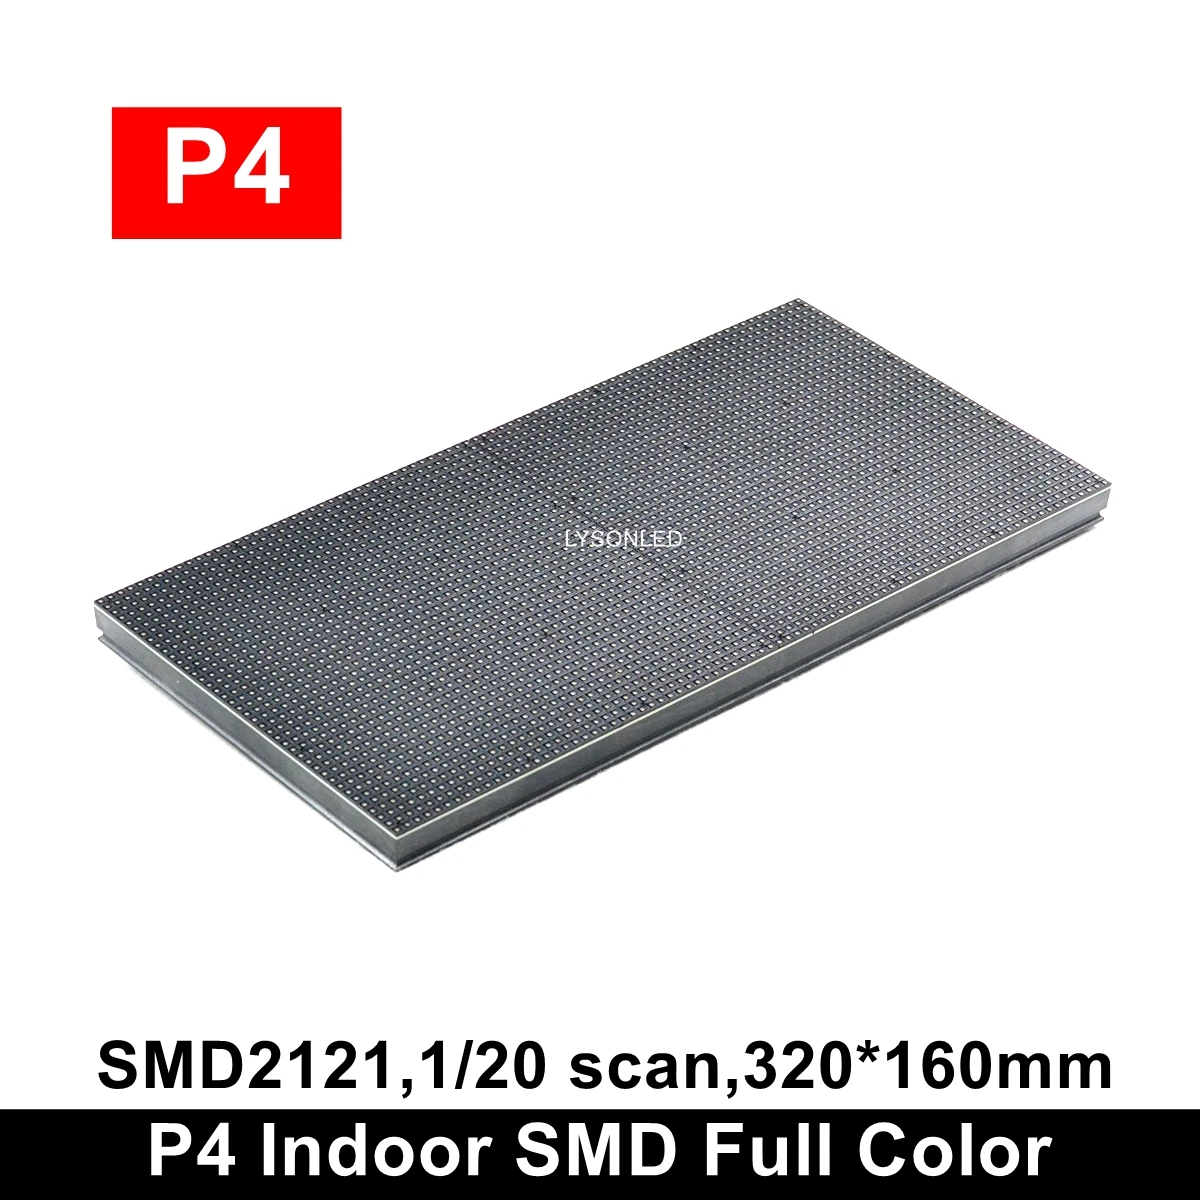 Крытый SMD2121 полноцветный P4 P5 светодиодный модуль 320x160 мм, высококачественный рекламный светодиодный настенный RGB светодиодный дисплей 32x16 см